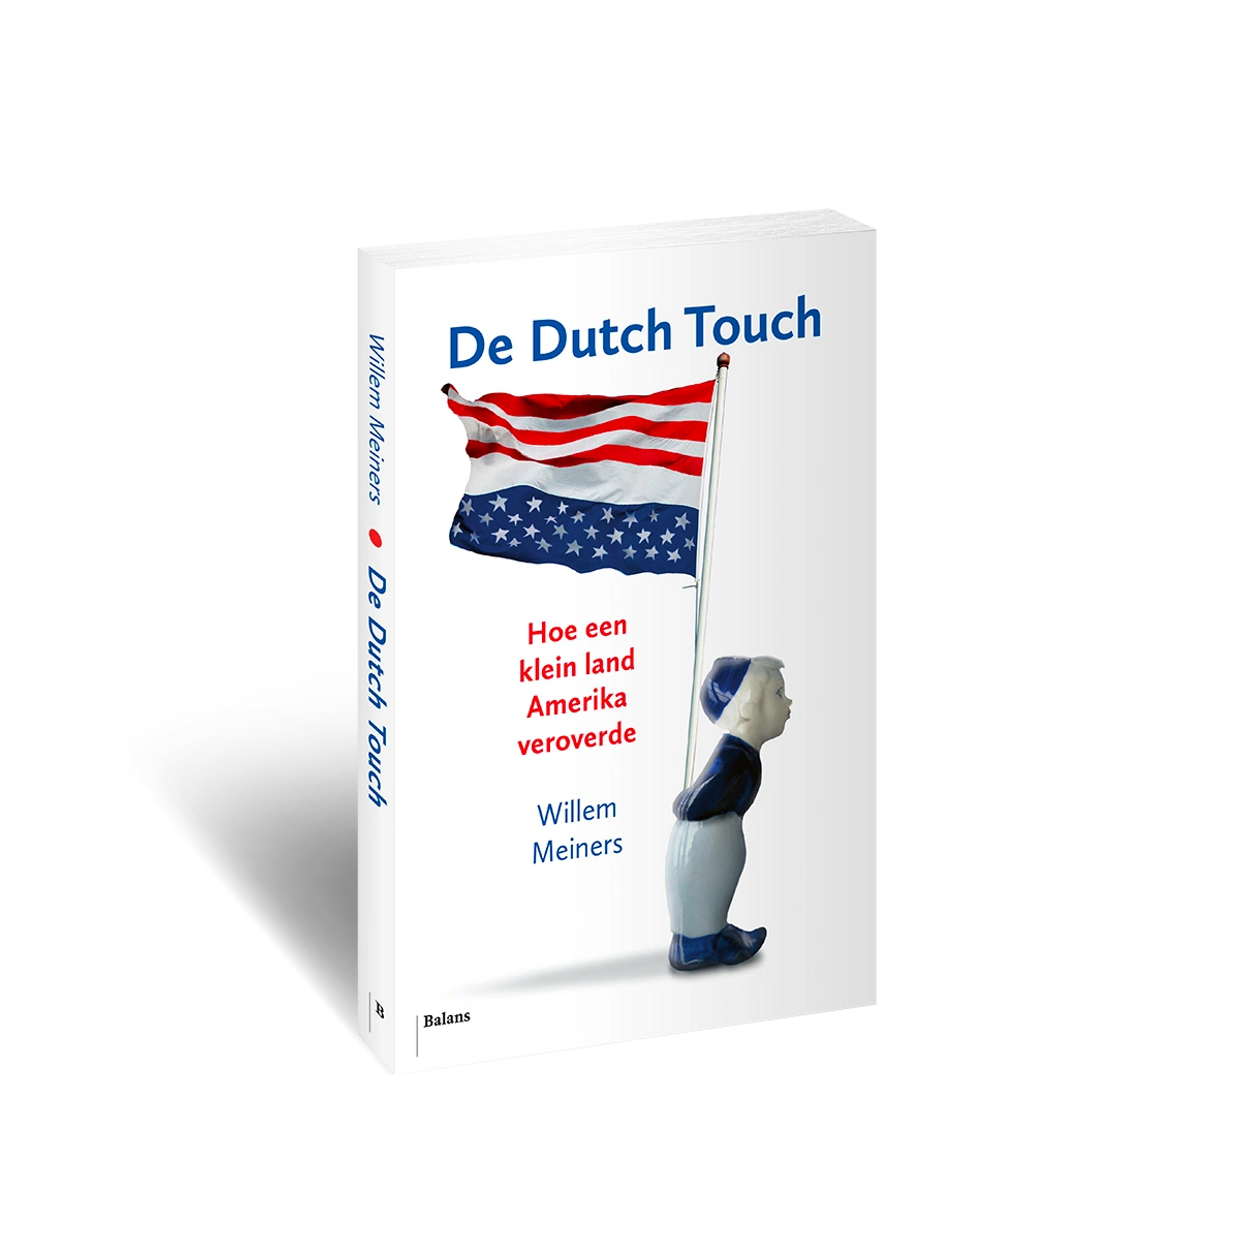 De Dutch Touch